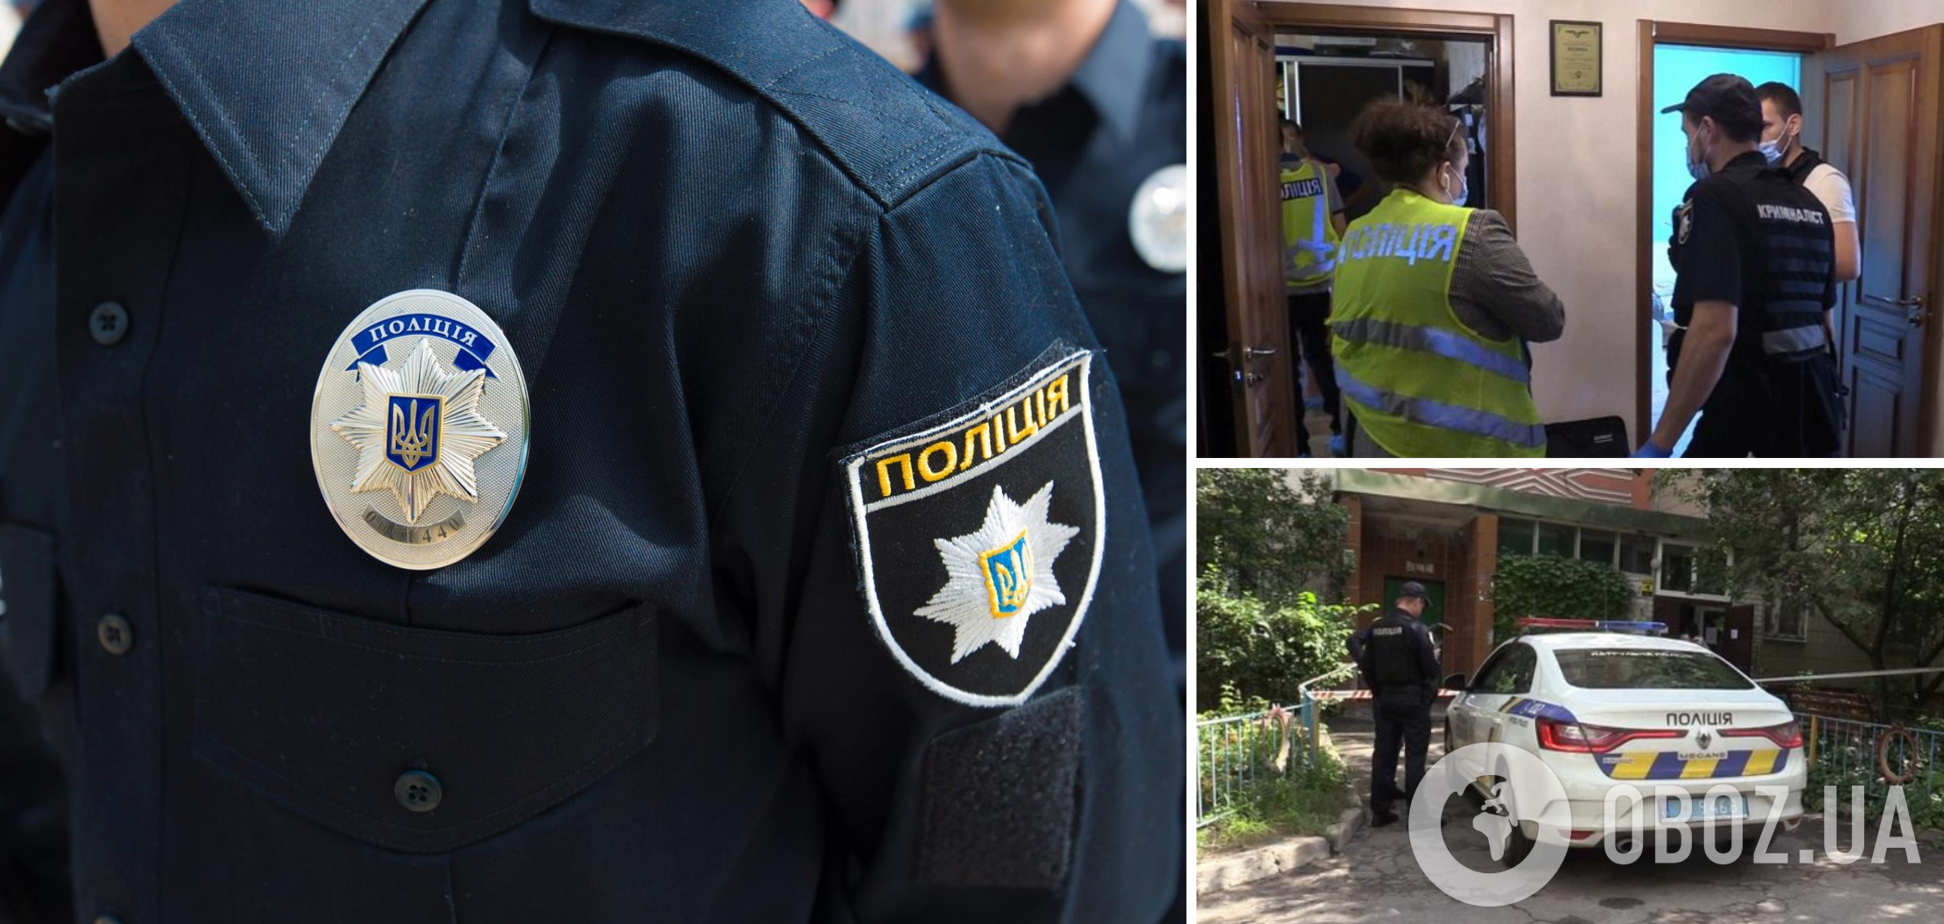 Задержан подозреваемый в жестоком убийстве женщины в Киеве. Фото и видео